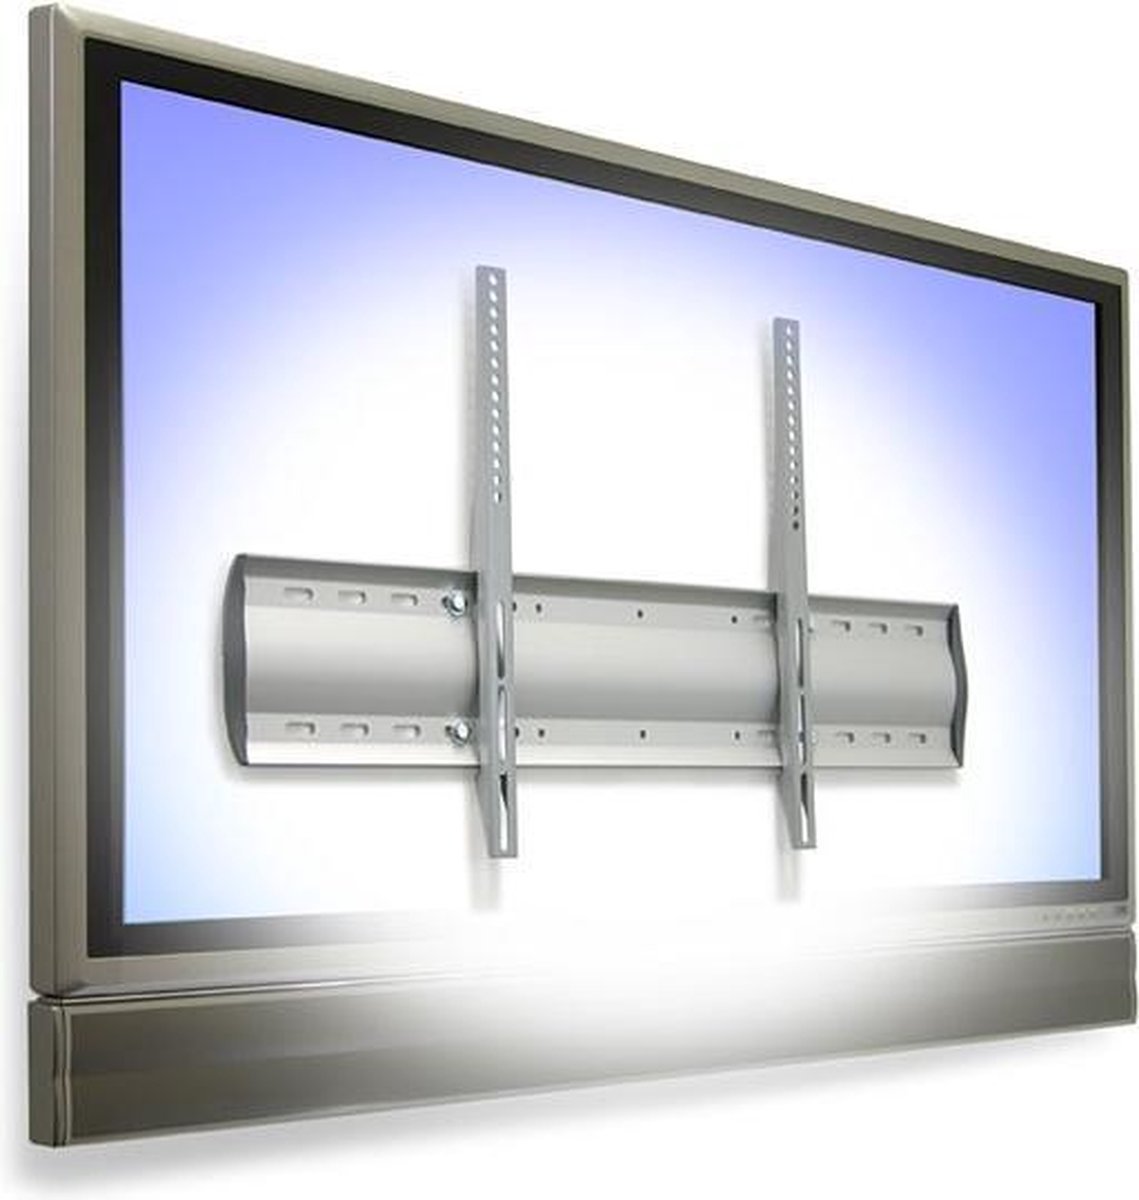 Ergotron Wm Low Profile Wall Mount - Bevestigingskit (Muurplaat Bevestigers 2 Beugels) Voor Lcd / Plasmascherm - Aluminium Staal - Zilver - Schermgrootte: Vanaf 81 28 Cm (32 ) - Te Bevestigen Aan De Muur